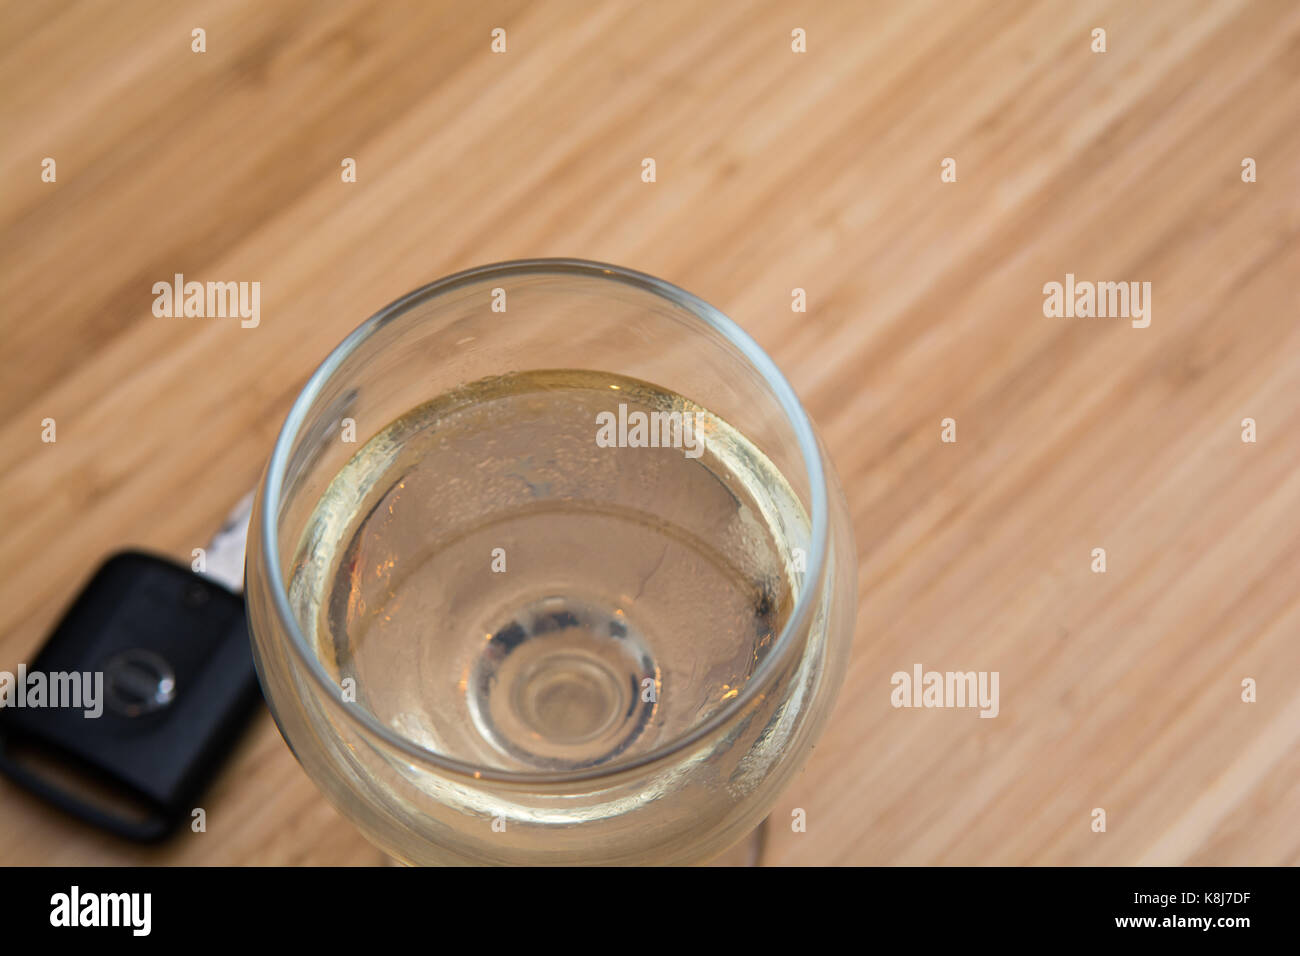 Alkohol am Steuer, alkoholische Getränk und Autoschlüssel auf den Tisch Stockfoto